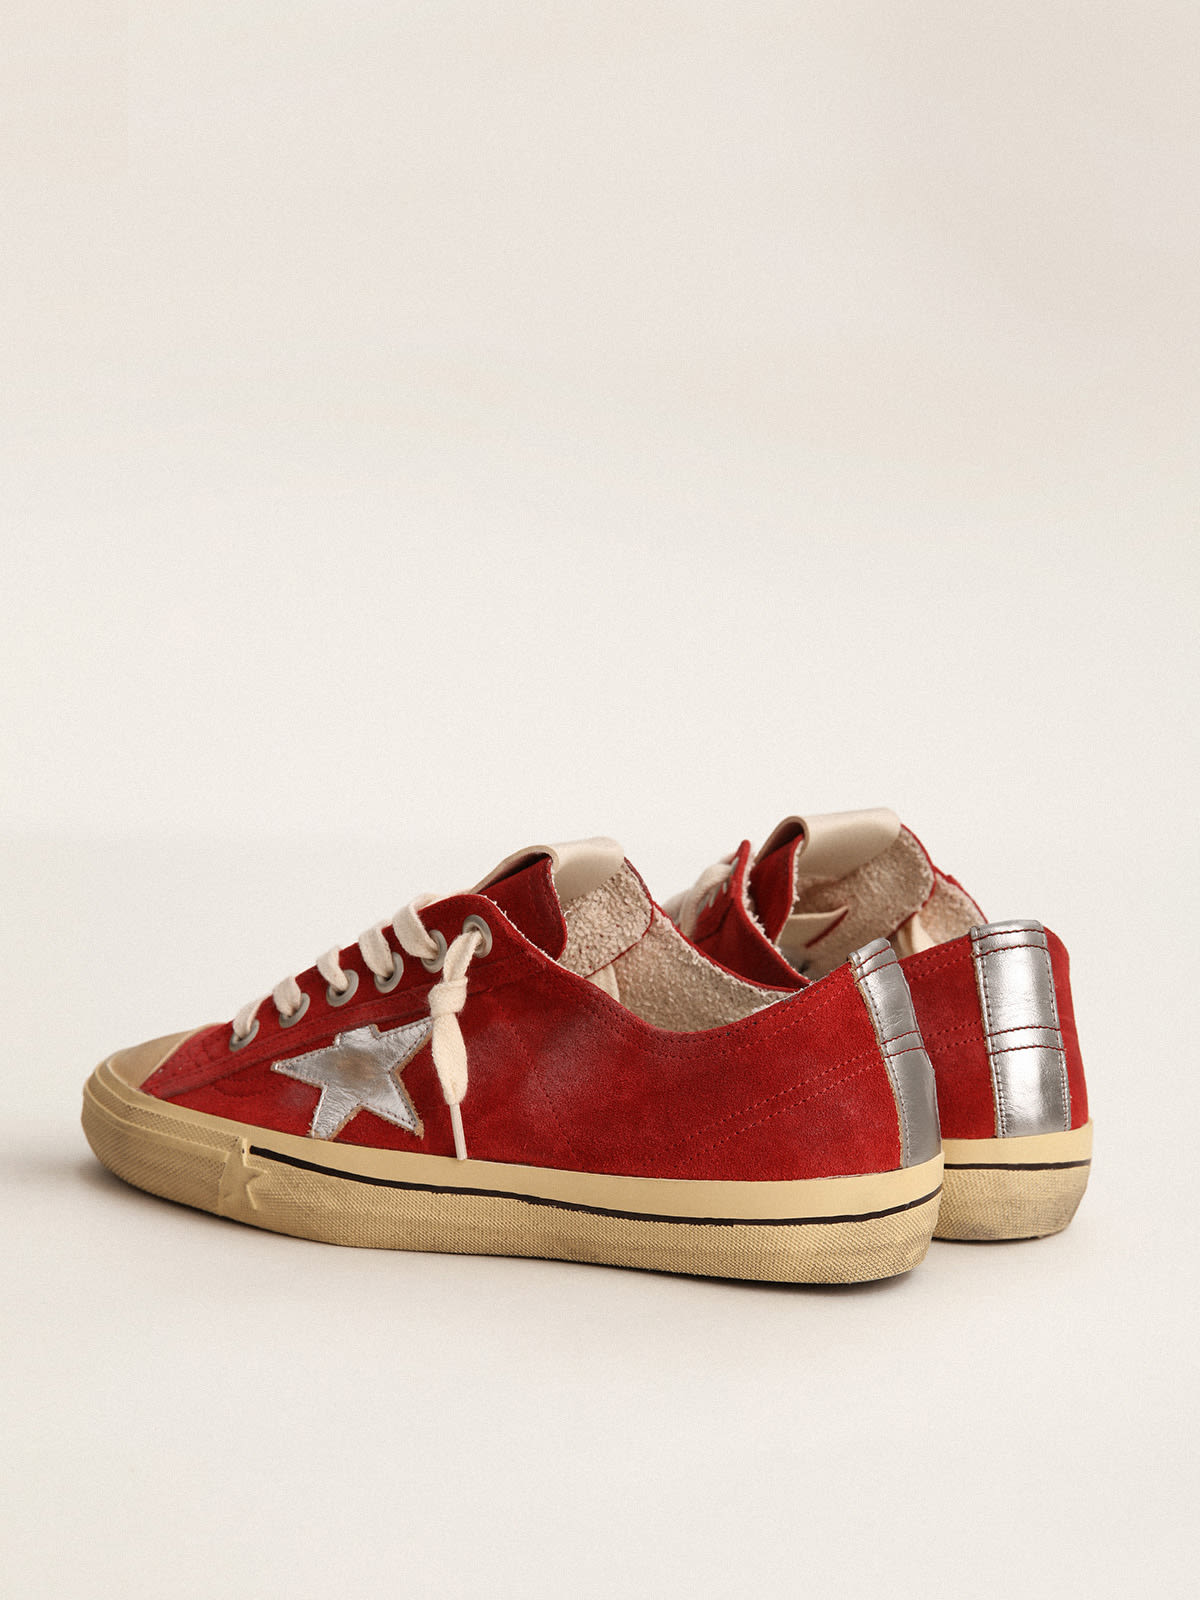 Golden Goose - Sneaker V-Star LTD in suede color rosso scuro con stella e talloncino in pelle laminata color argento in 